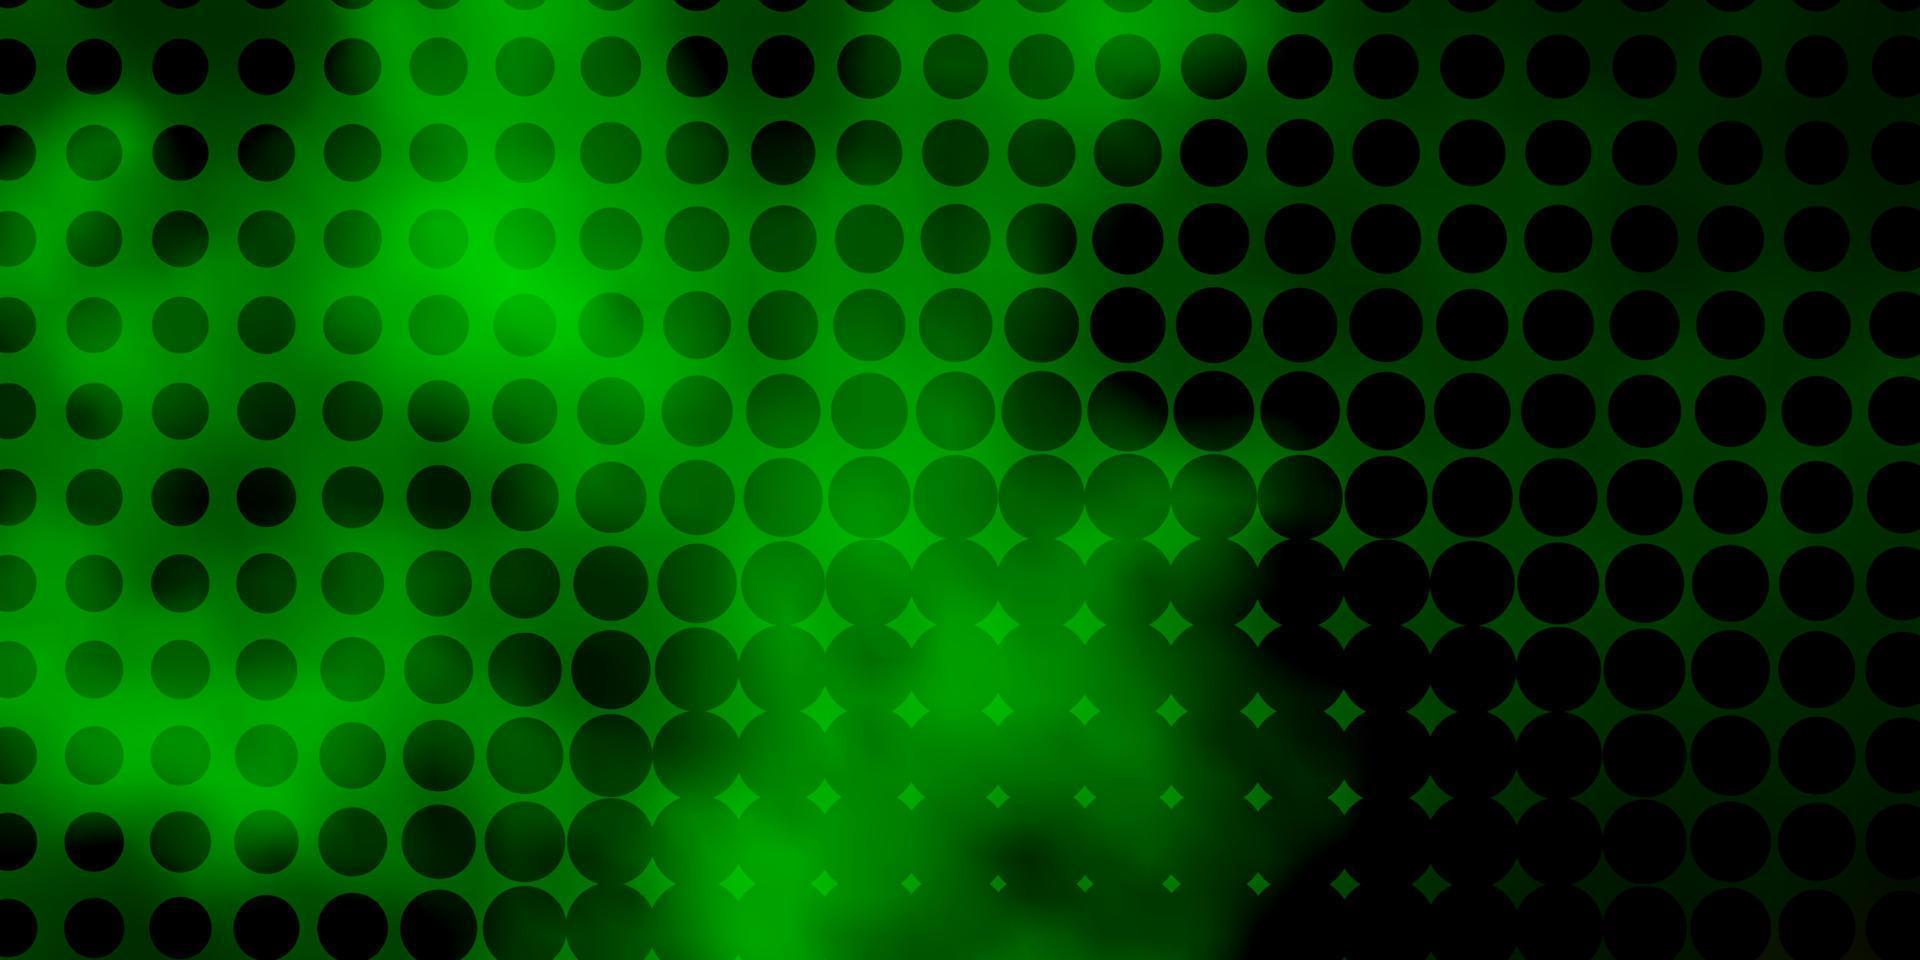 patrón de vector verde claro, rojo con esferas.